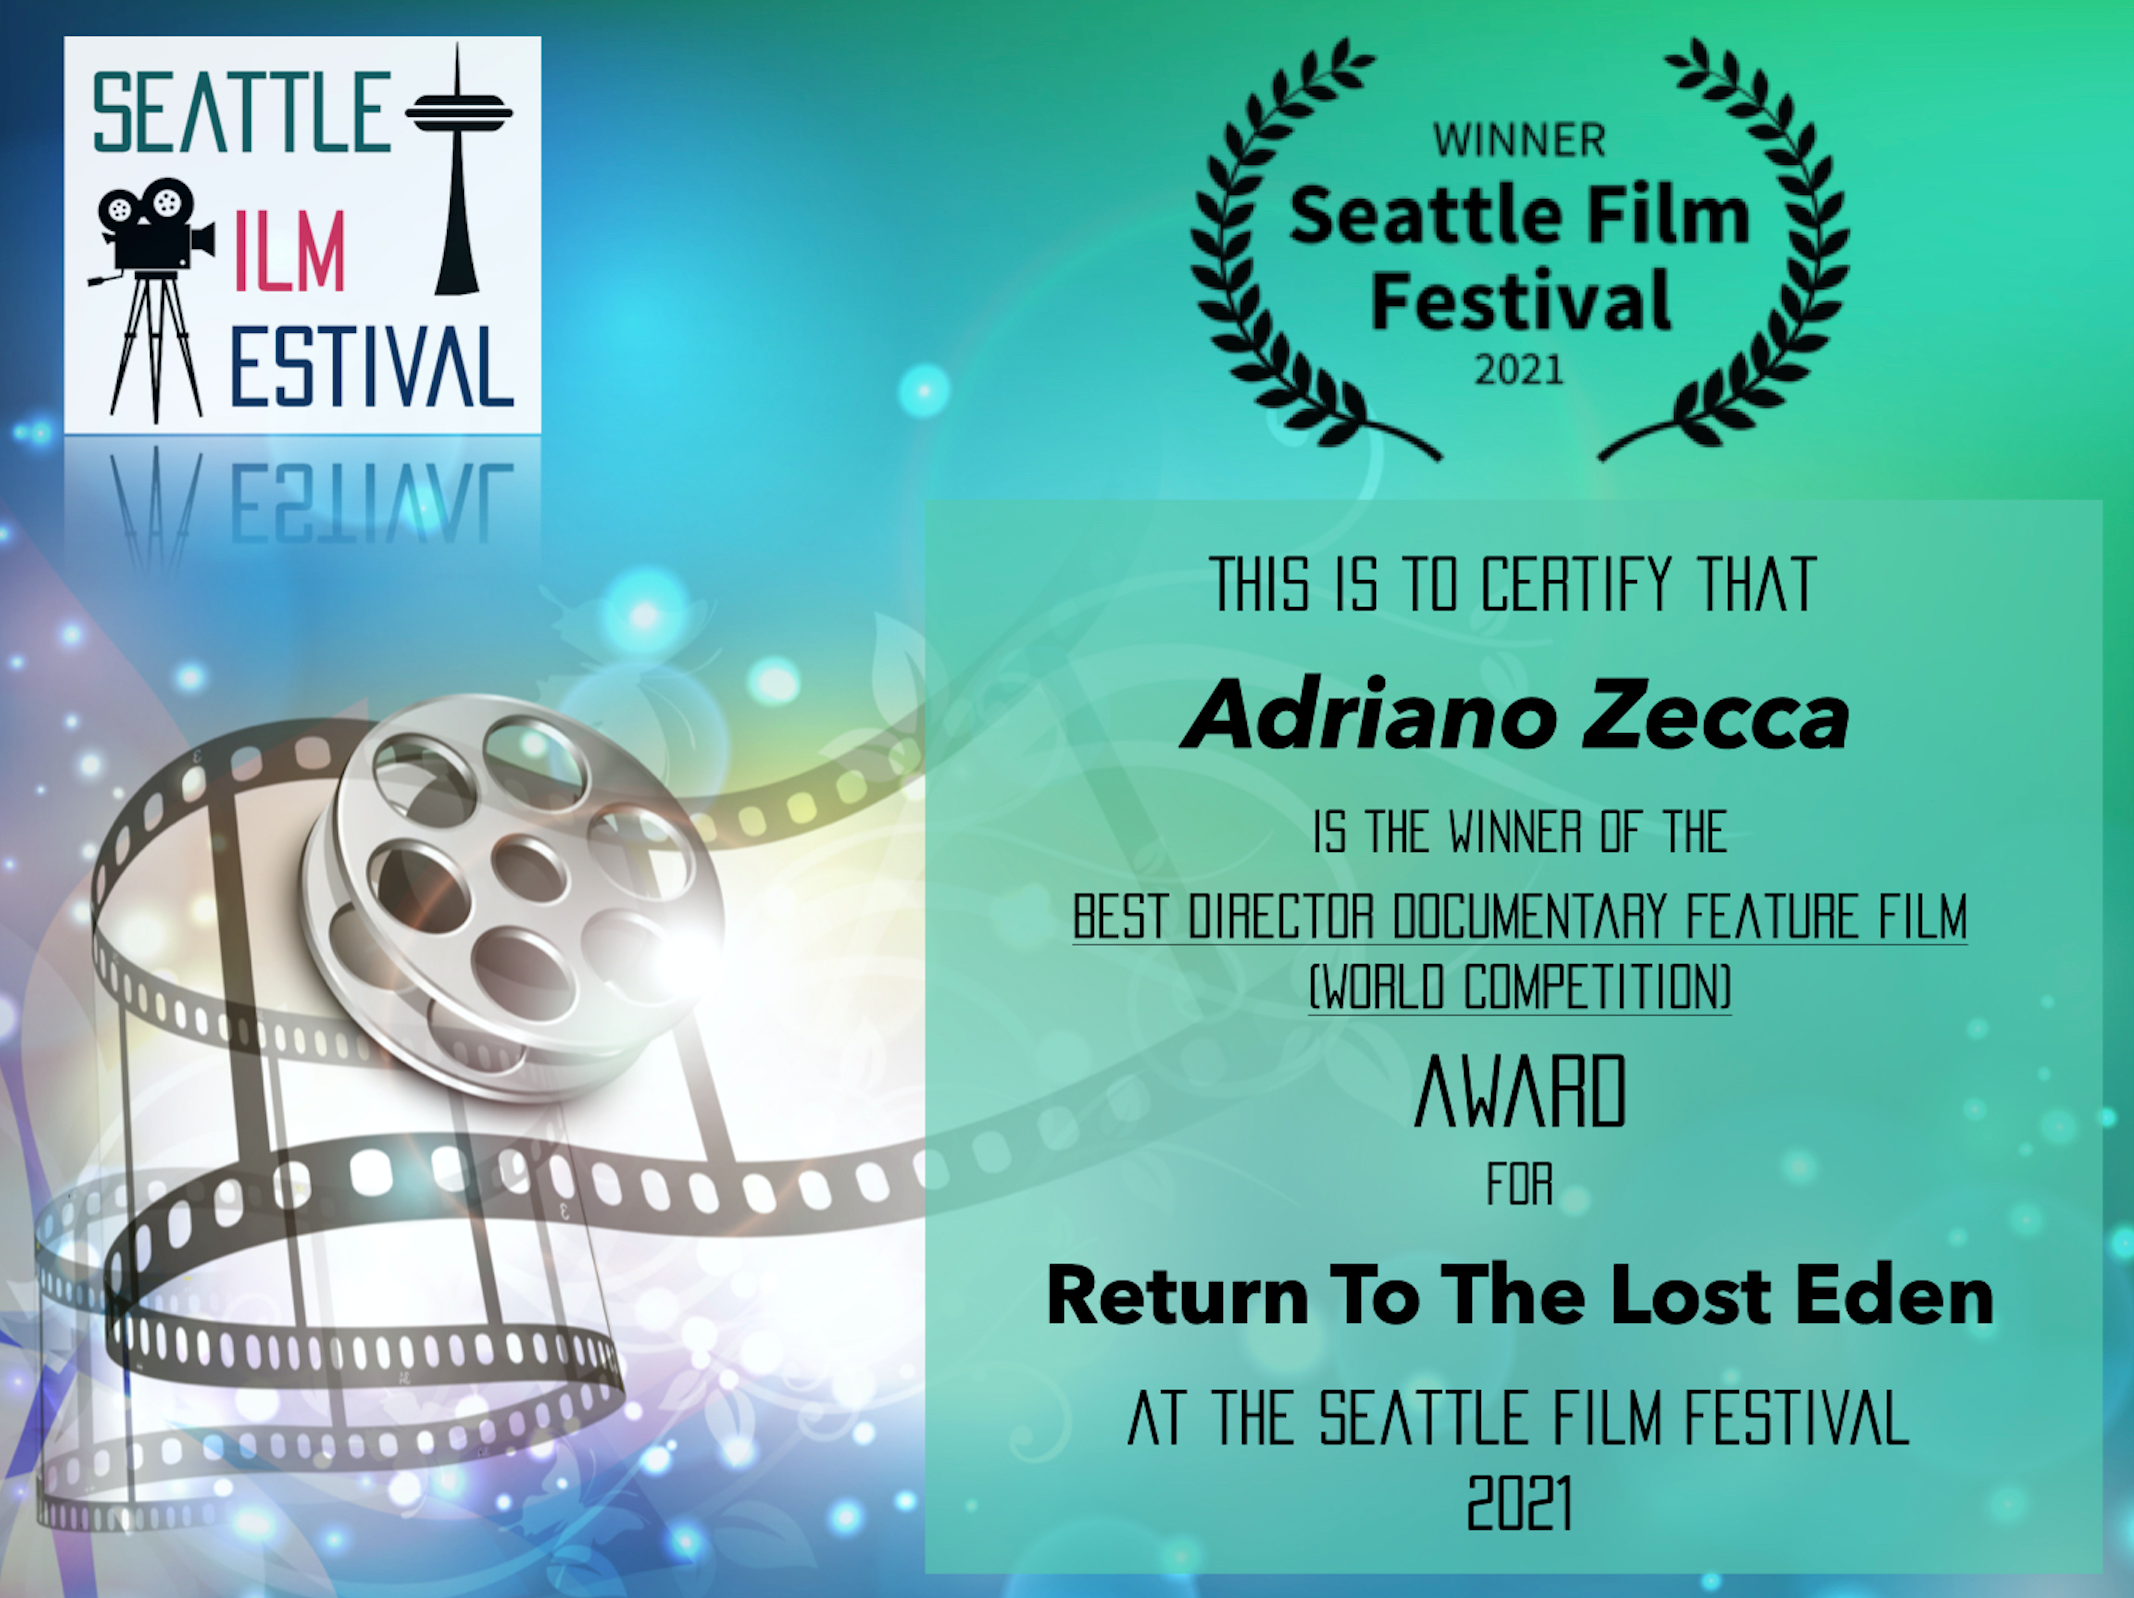 Premio “Miglior regia” al Seattle Film Festival!